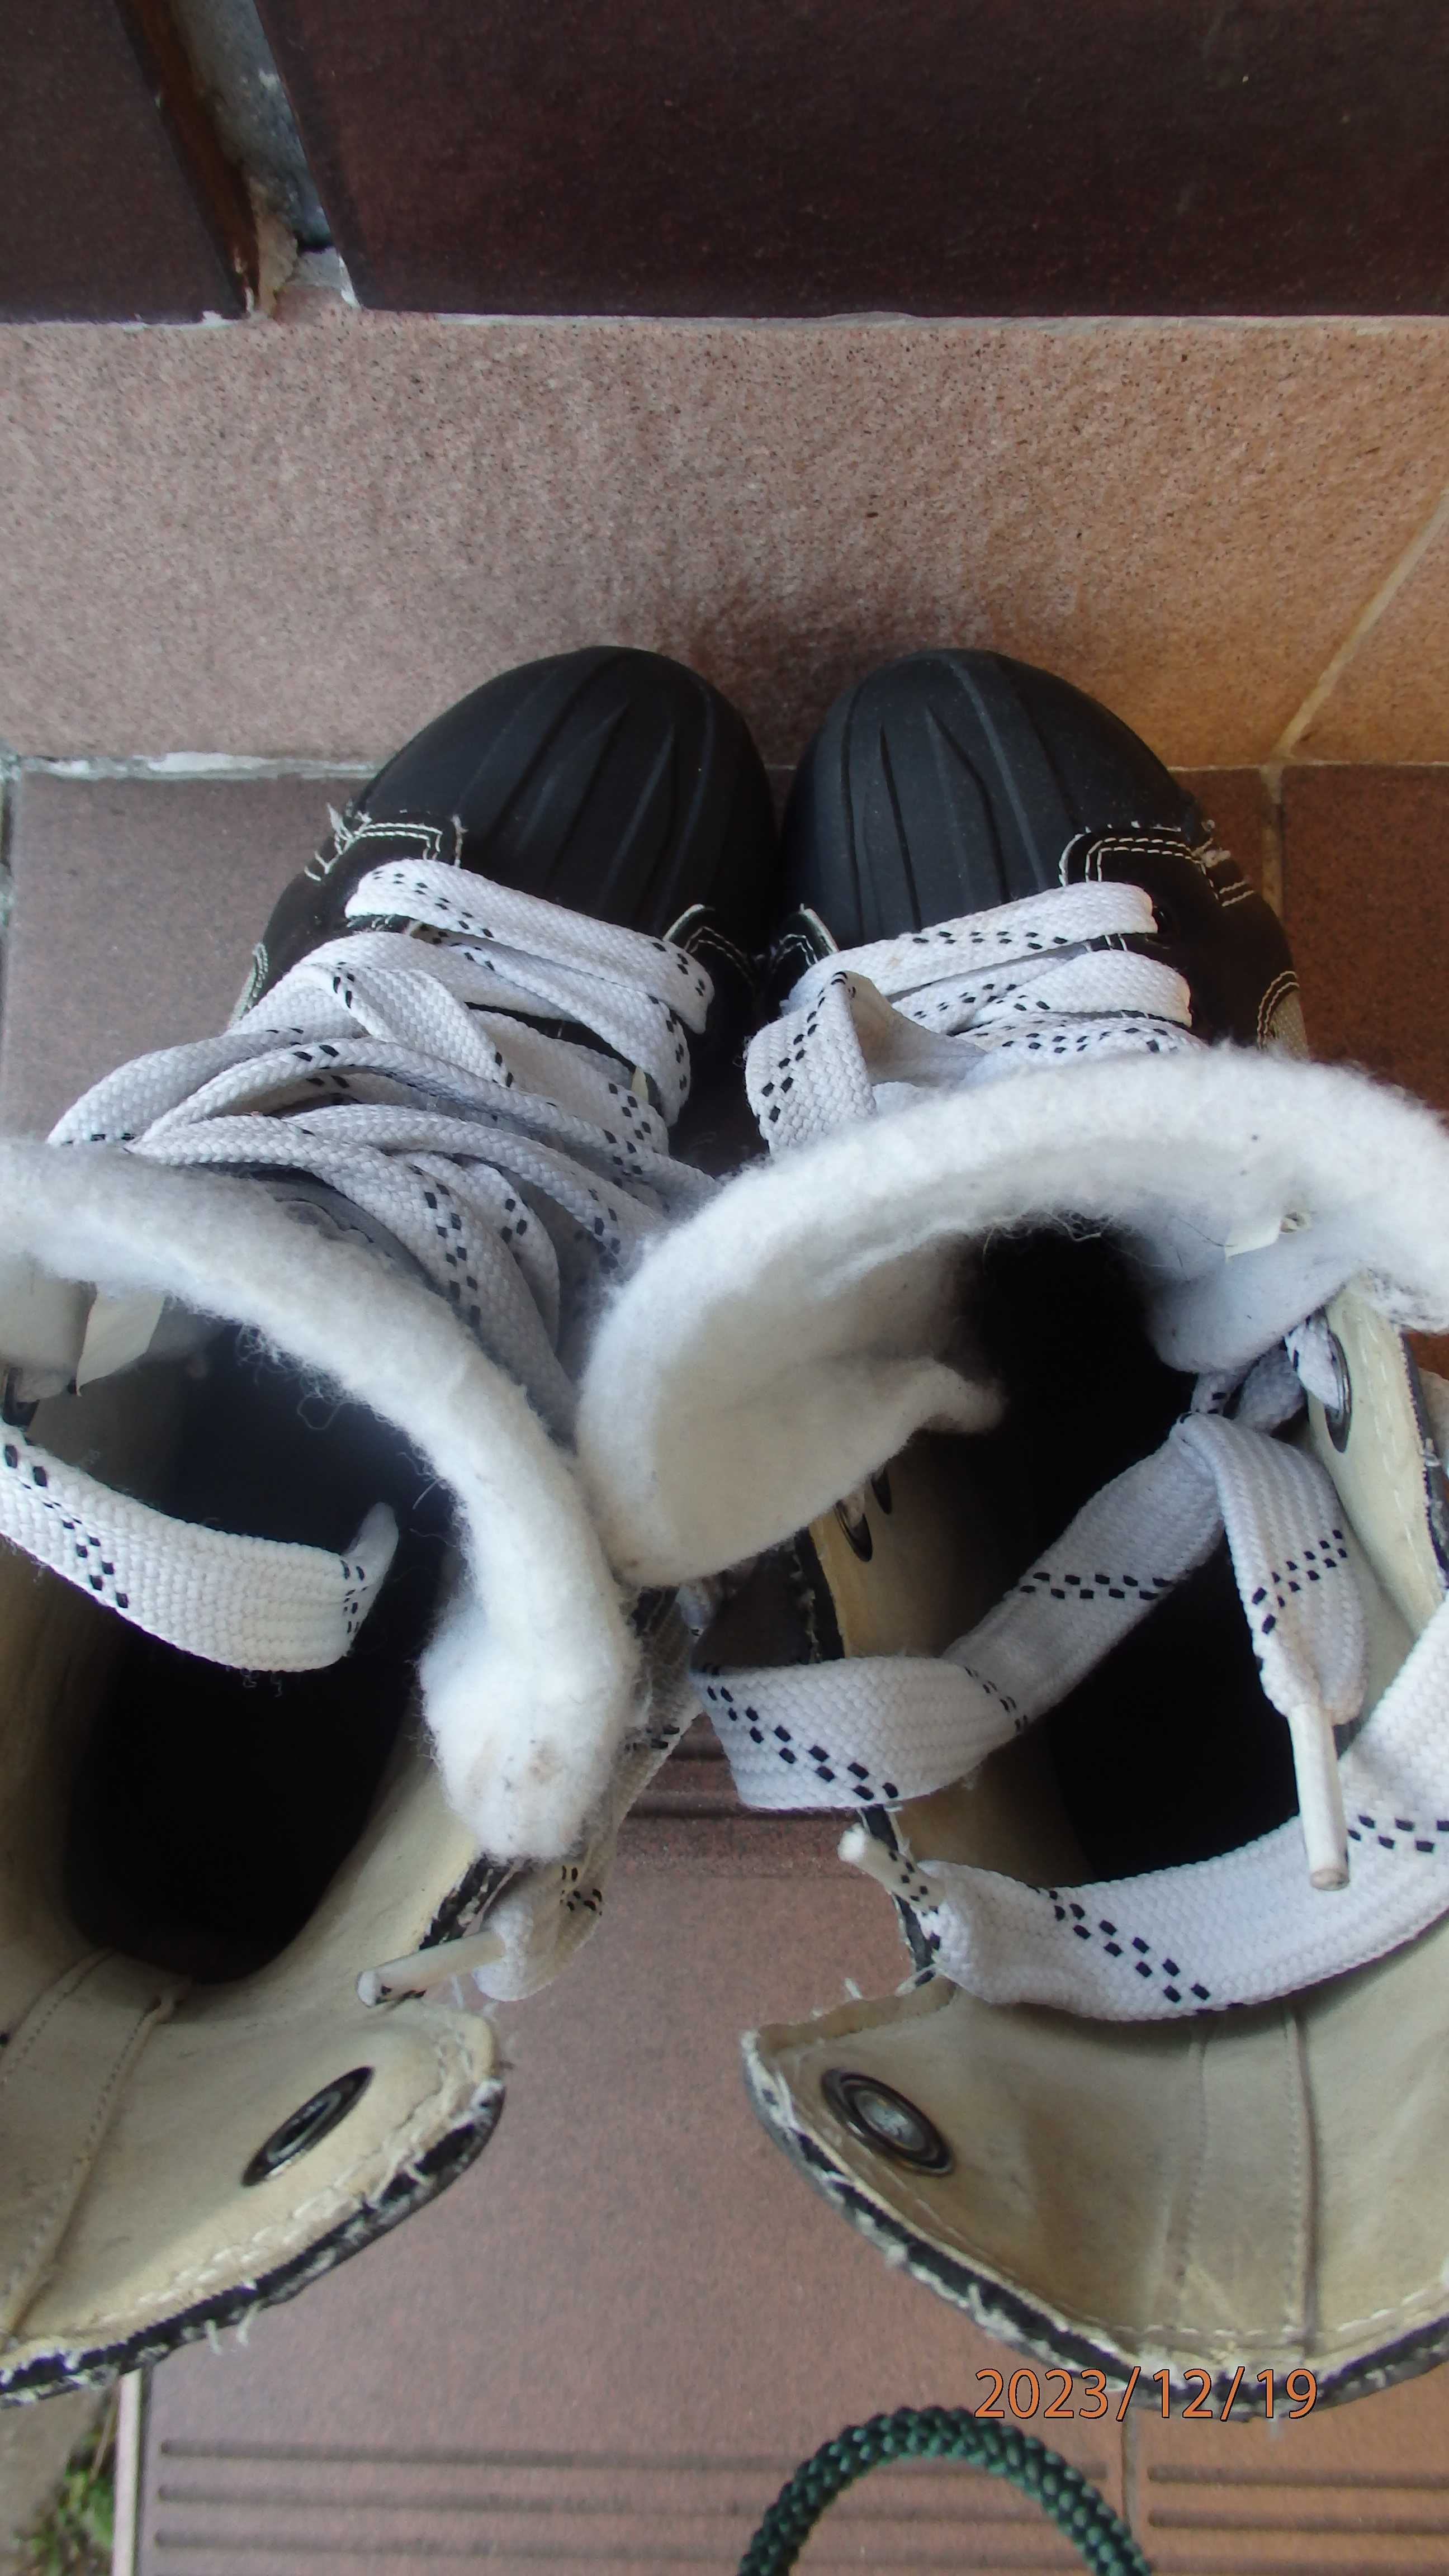 Buty zimowe męskie - z łyżwami firmy Max Team rozmiar 39